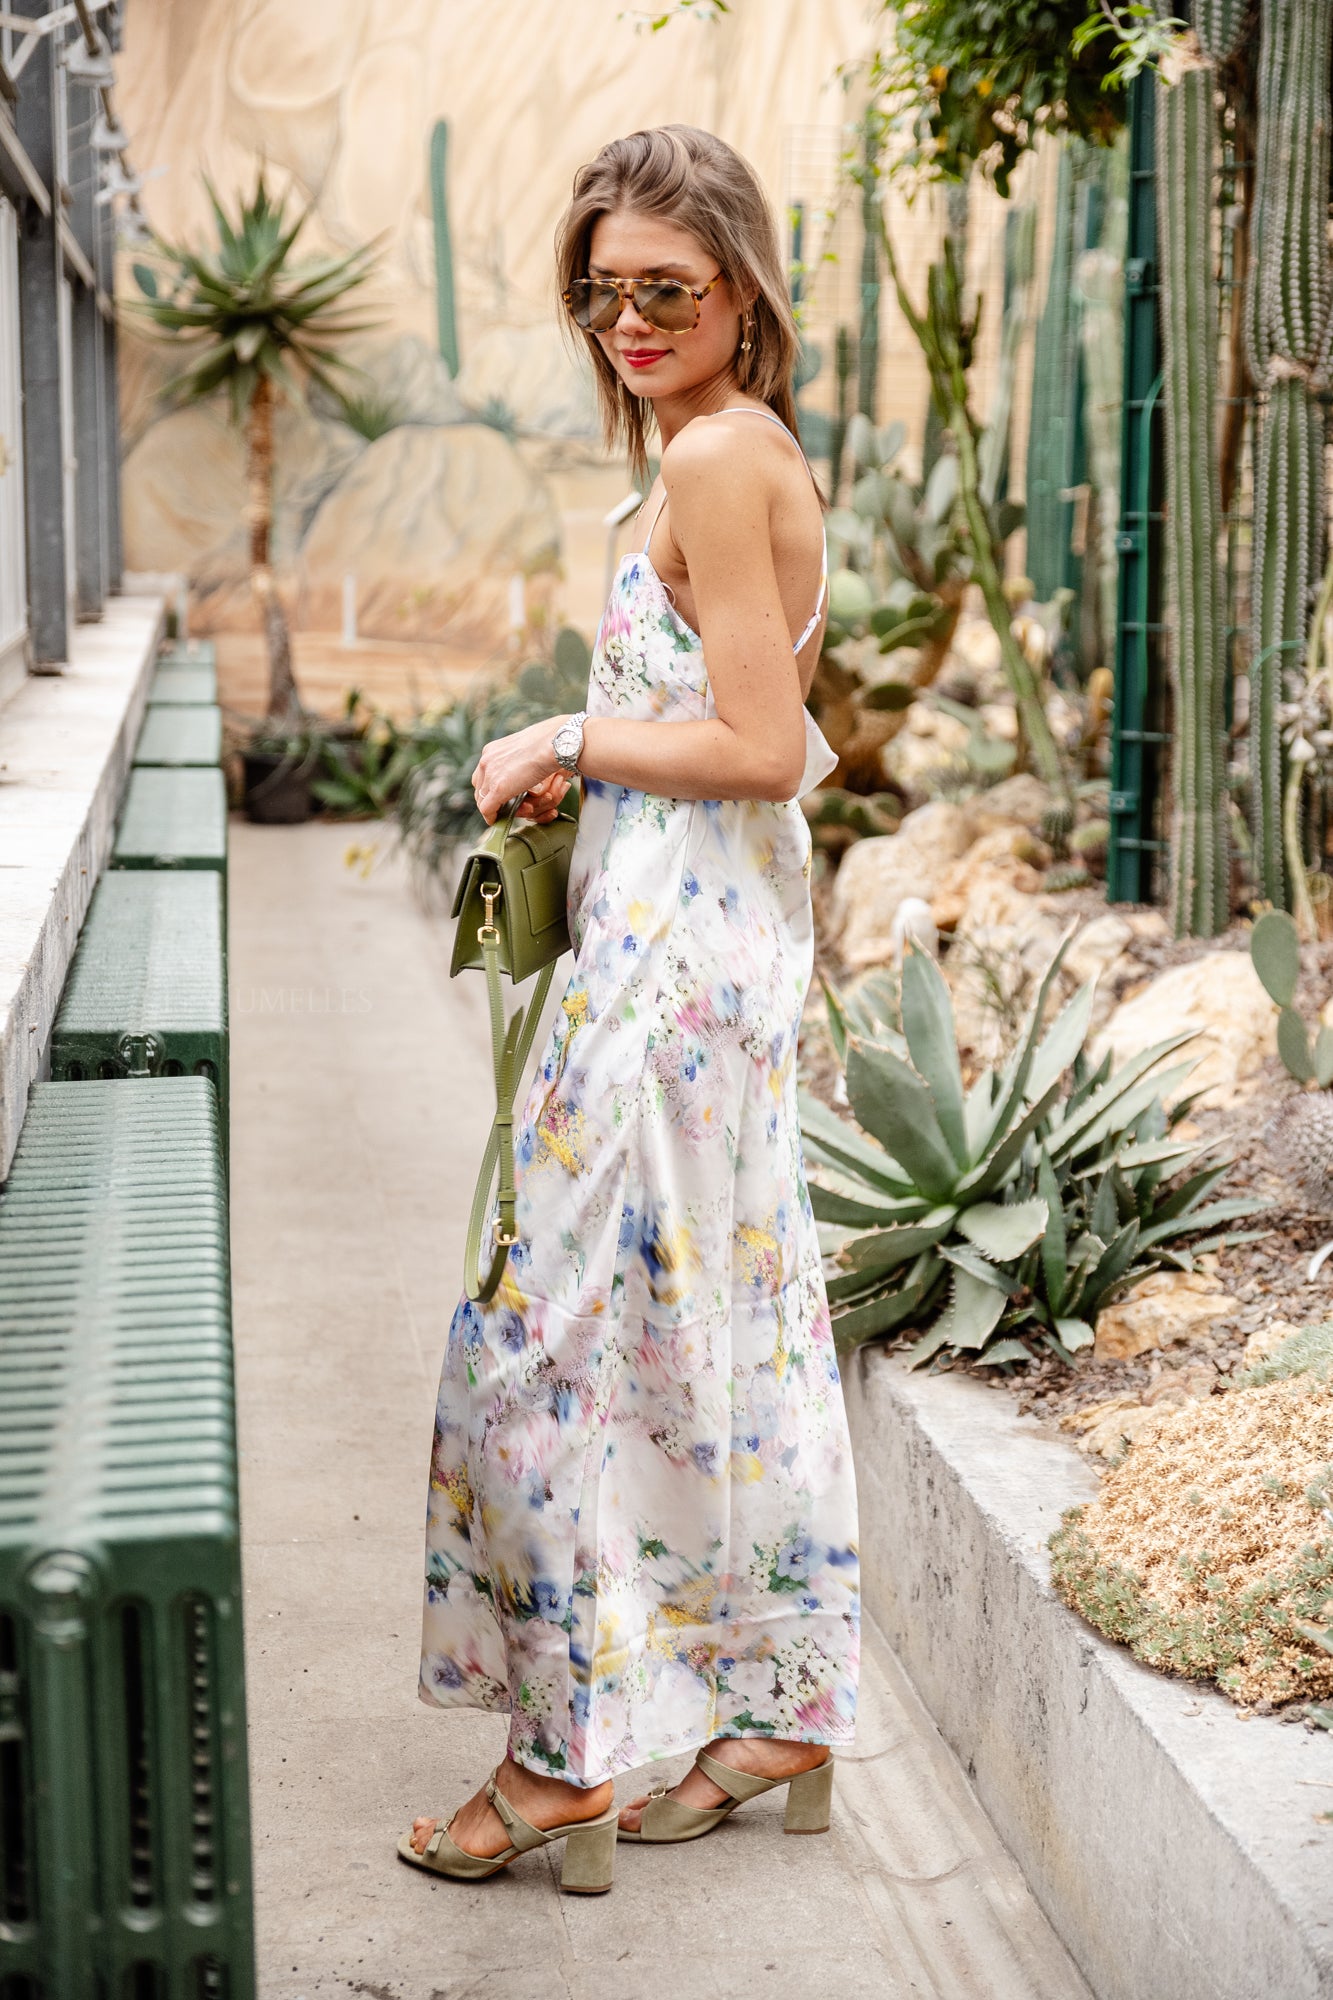 Dorothee Kleid mit Blumendruck